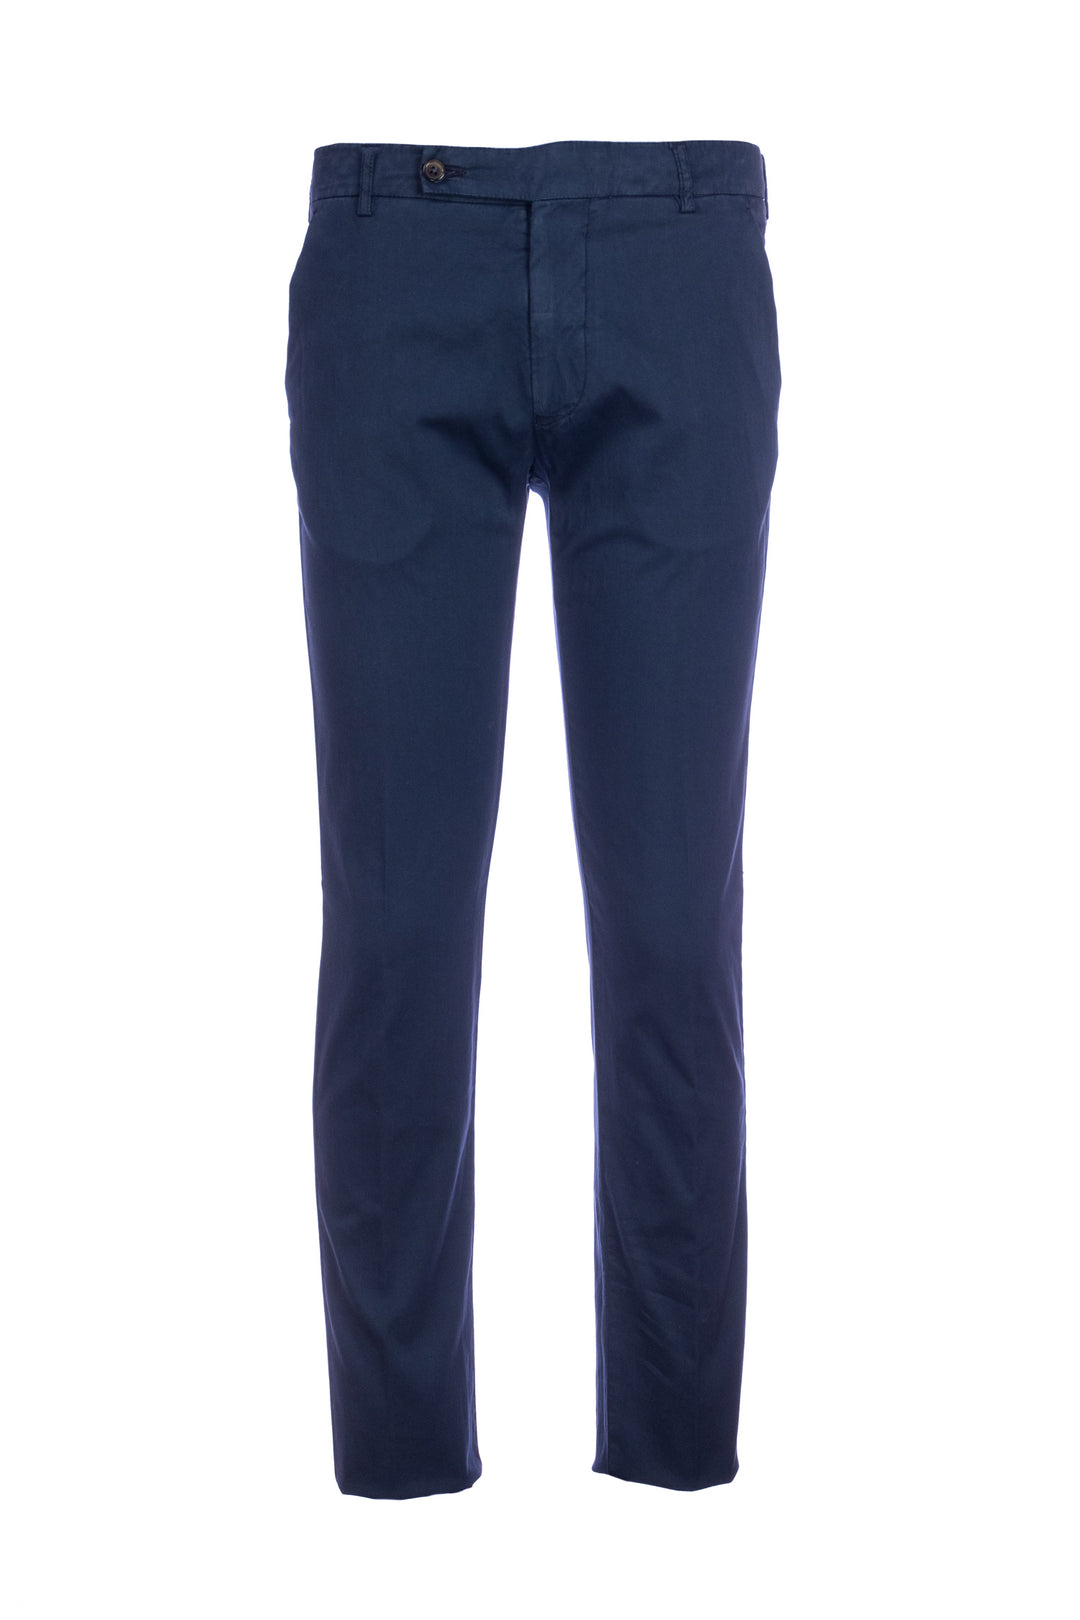 BERWICH Pantalone blu navy in misto cotone elasticizzato e seta - Mancinelli 1954